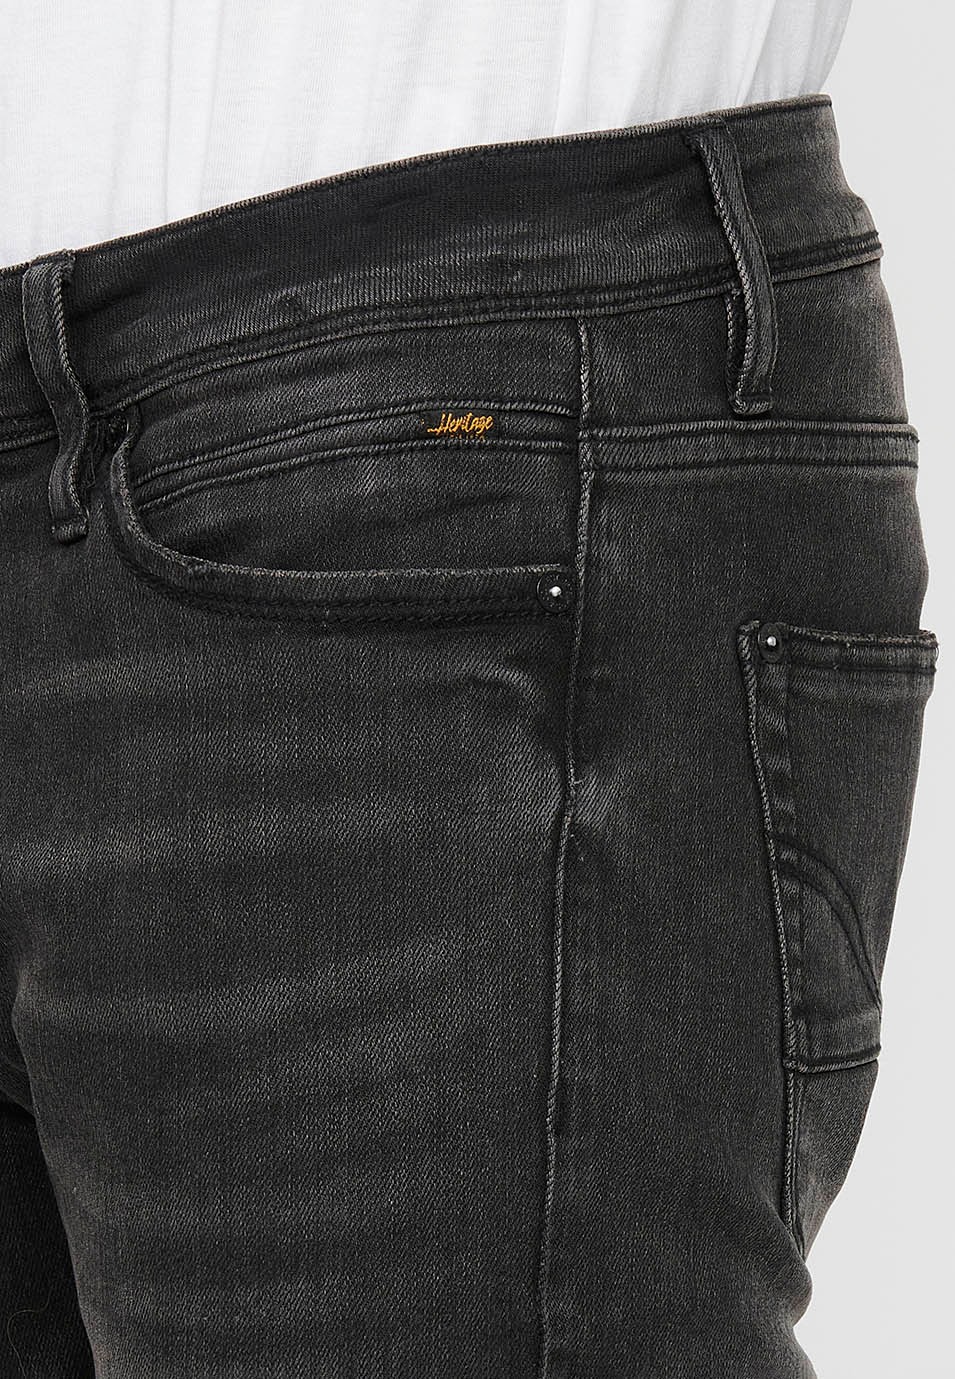 Pantalón jeans largo straigth regular fit con Cierre delantero con cremallera y botón de Color Denim Negro para Hombre 6